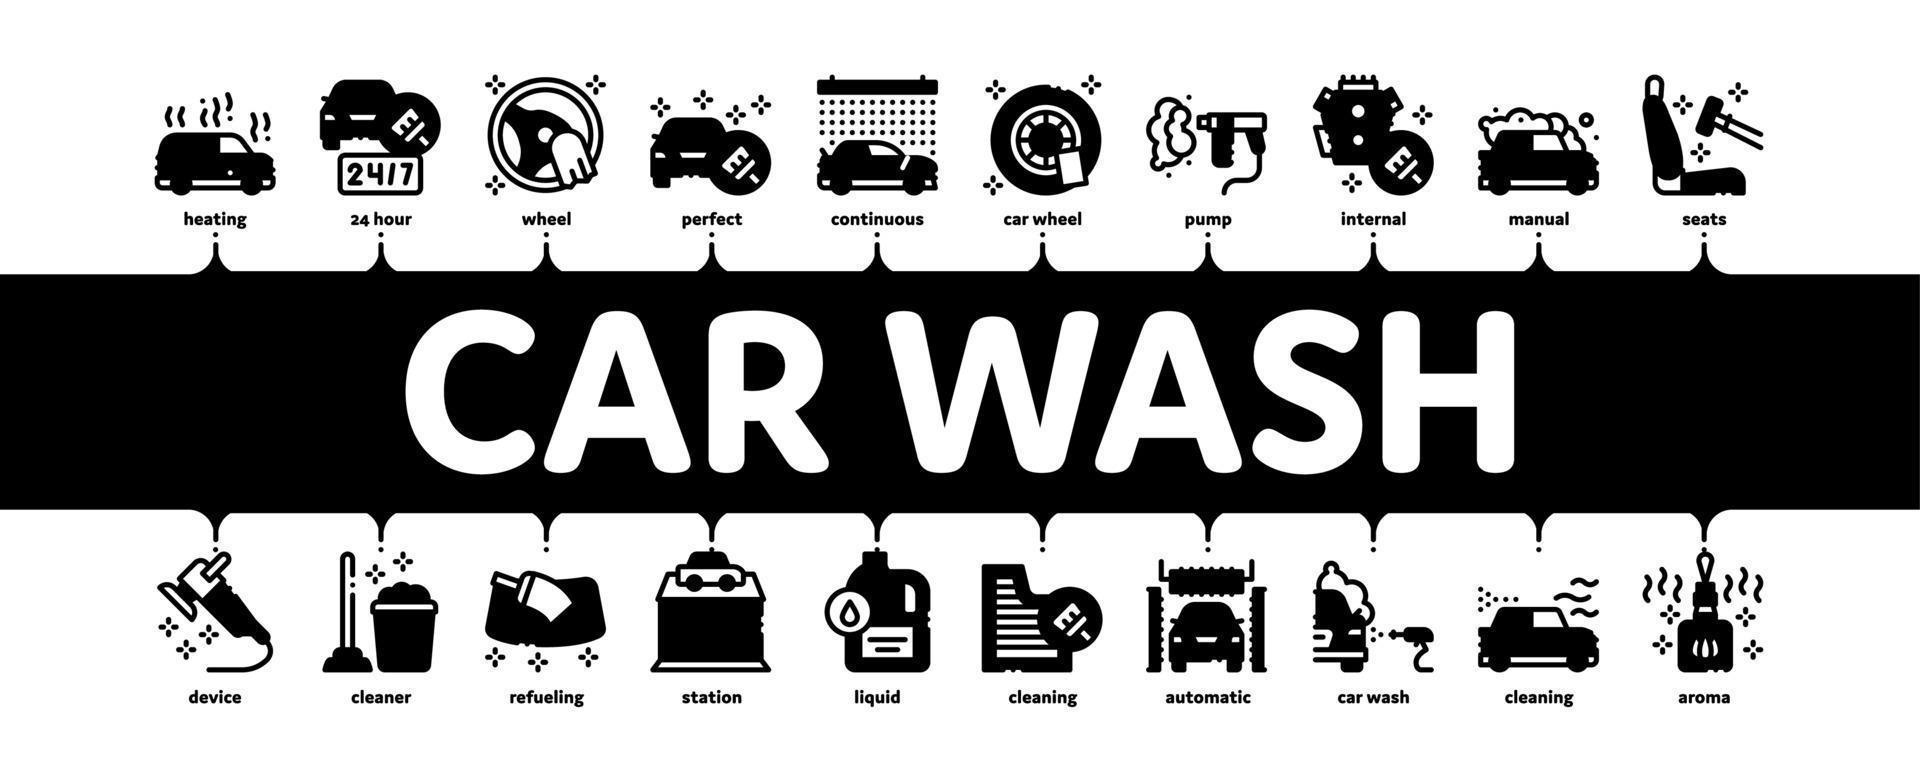 bil tvätta bil service minimal infographic baner vektor